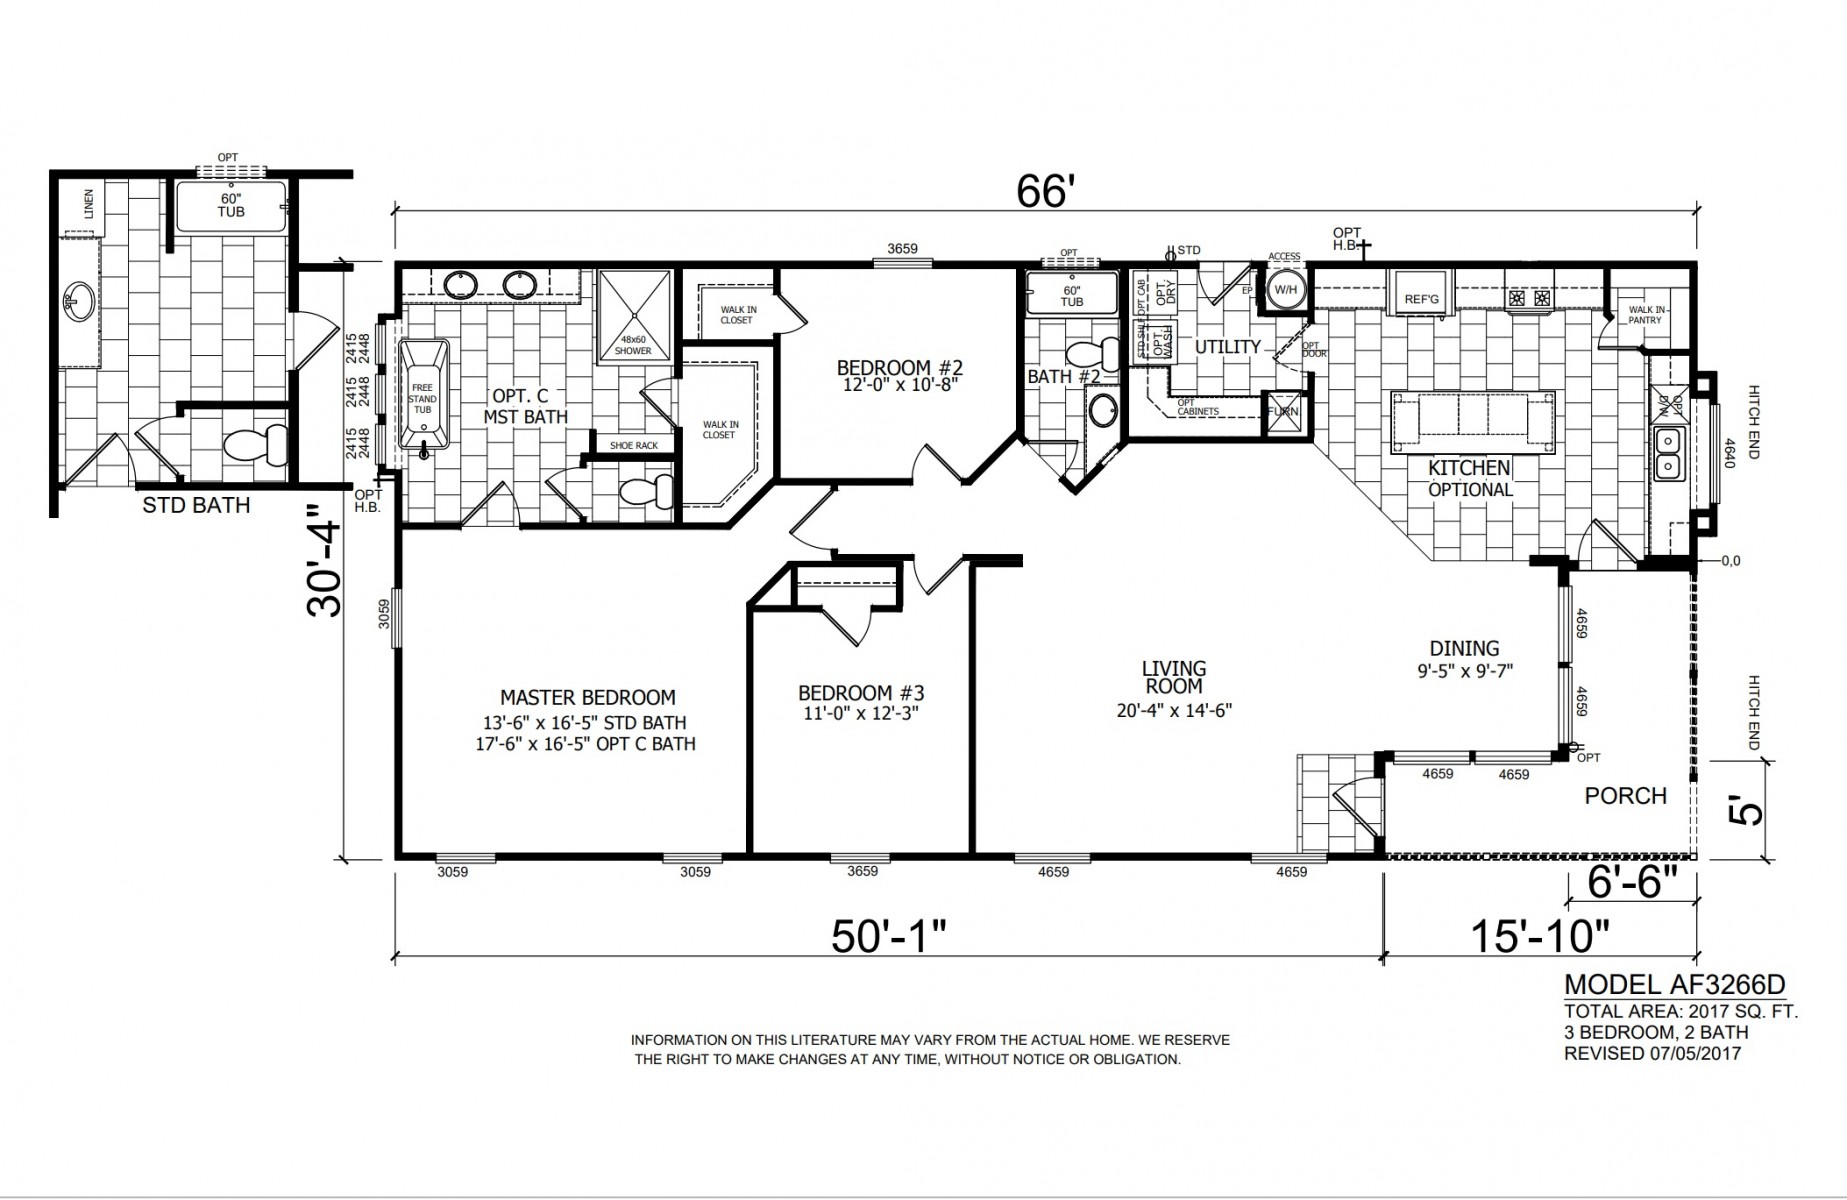 Homes Direct Modular Homes - Model AF3262 - Floorplan